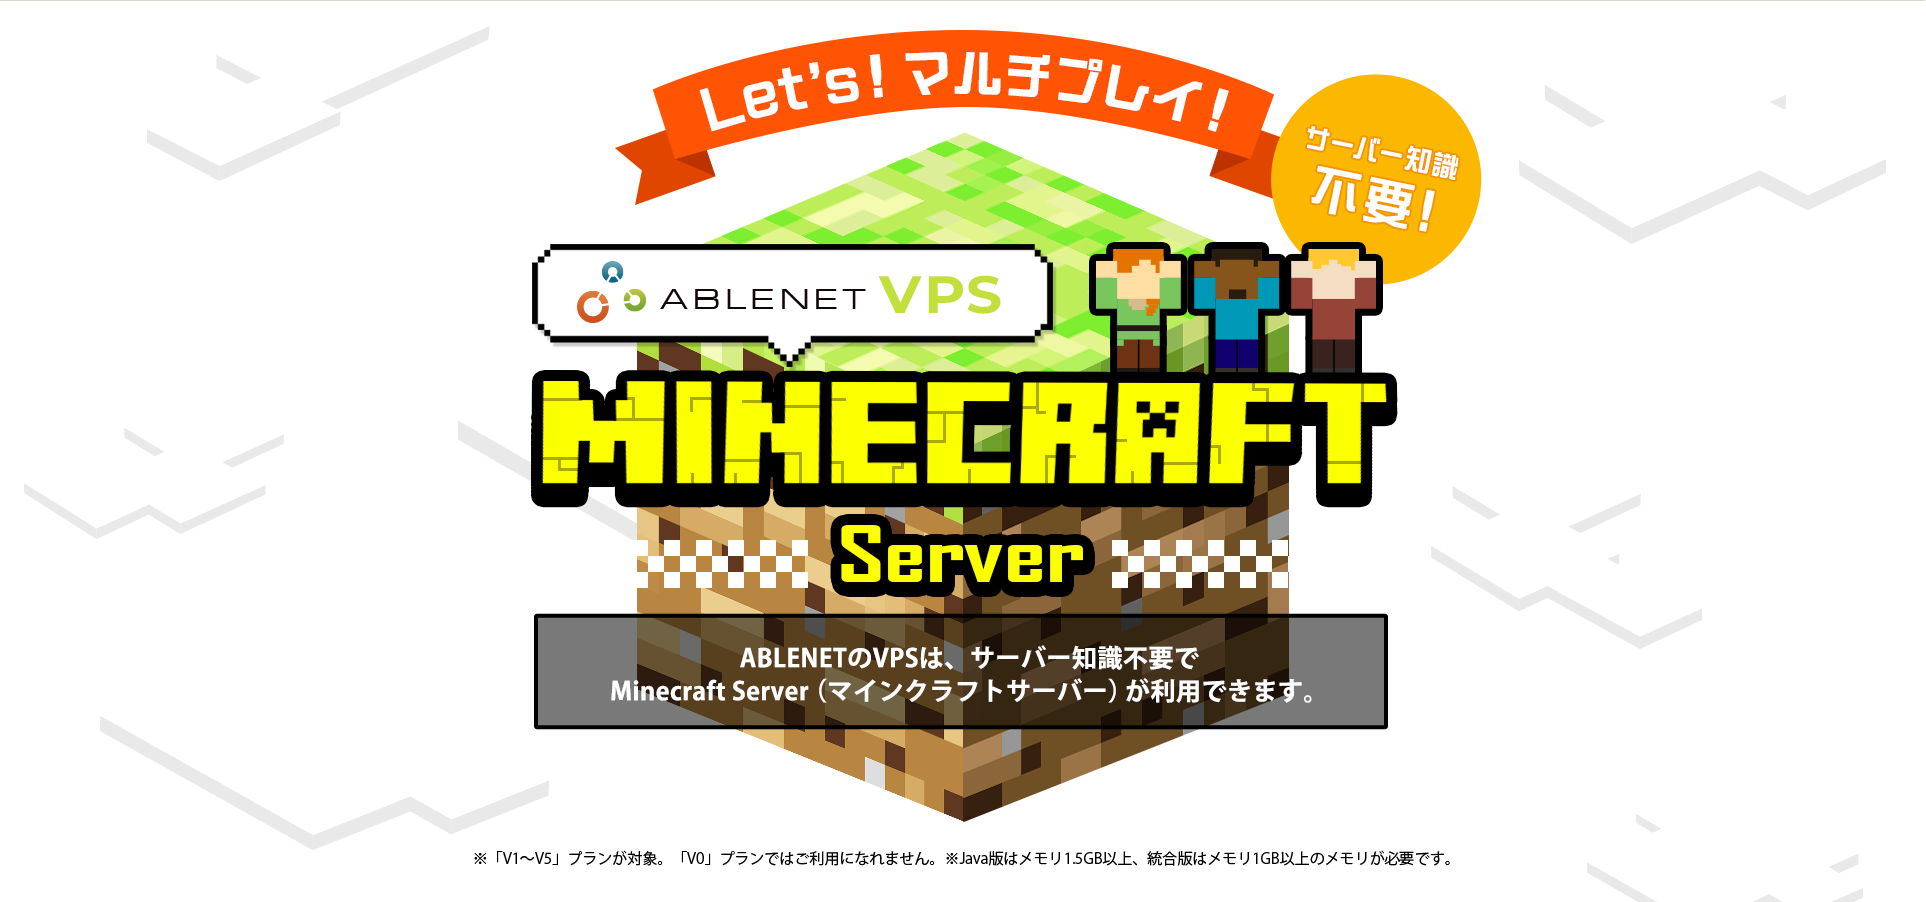 Let's!マルチプレイ！サーバー知識不要！ABLENET®VPS Minecraft server ABLENETのVPSは、サーバー知識不要でMinecraft Server（マインクラフトサーバー）が利用できます。※「V1～V5」プランが対象。「V0」プランではご利用になれません。※Java版はメモリ1.5GB以上、統合版はメモリ1GB以上のメモリが必要です。